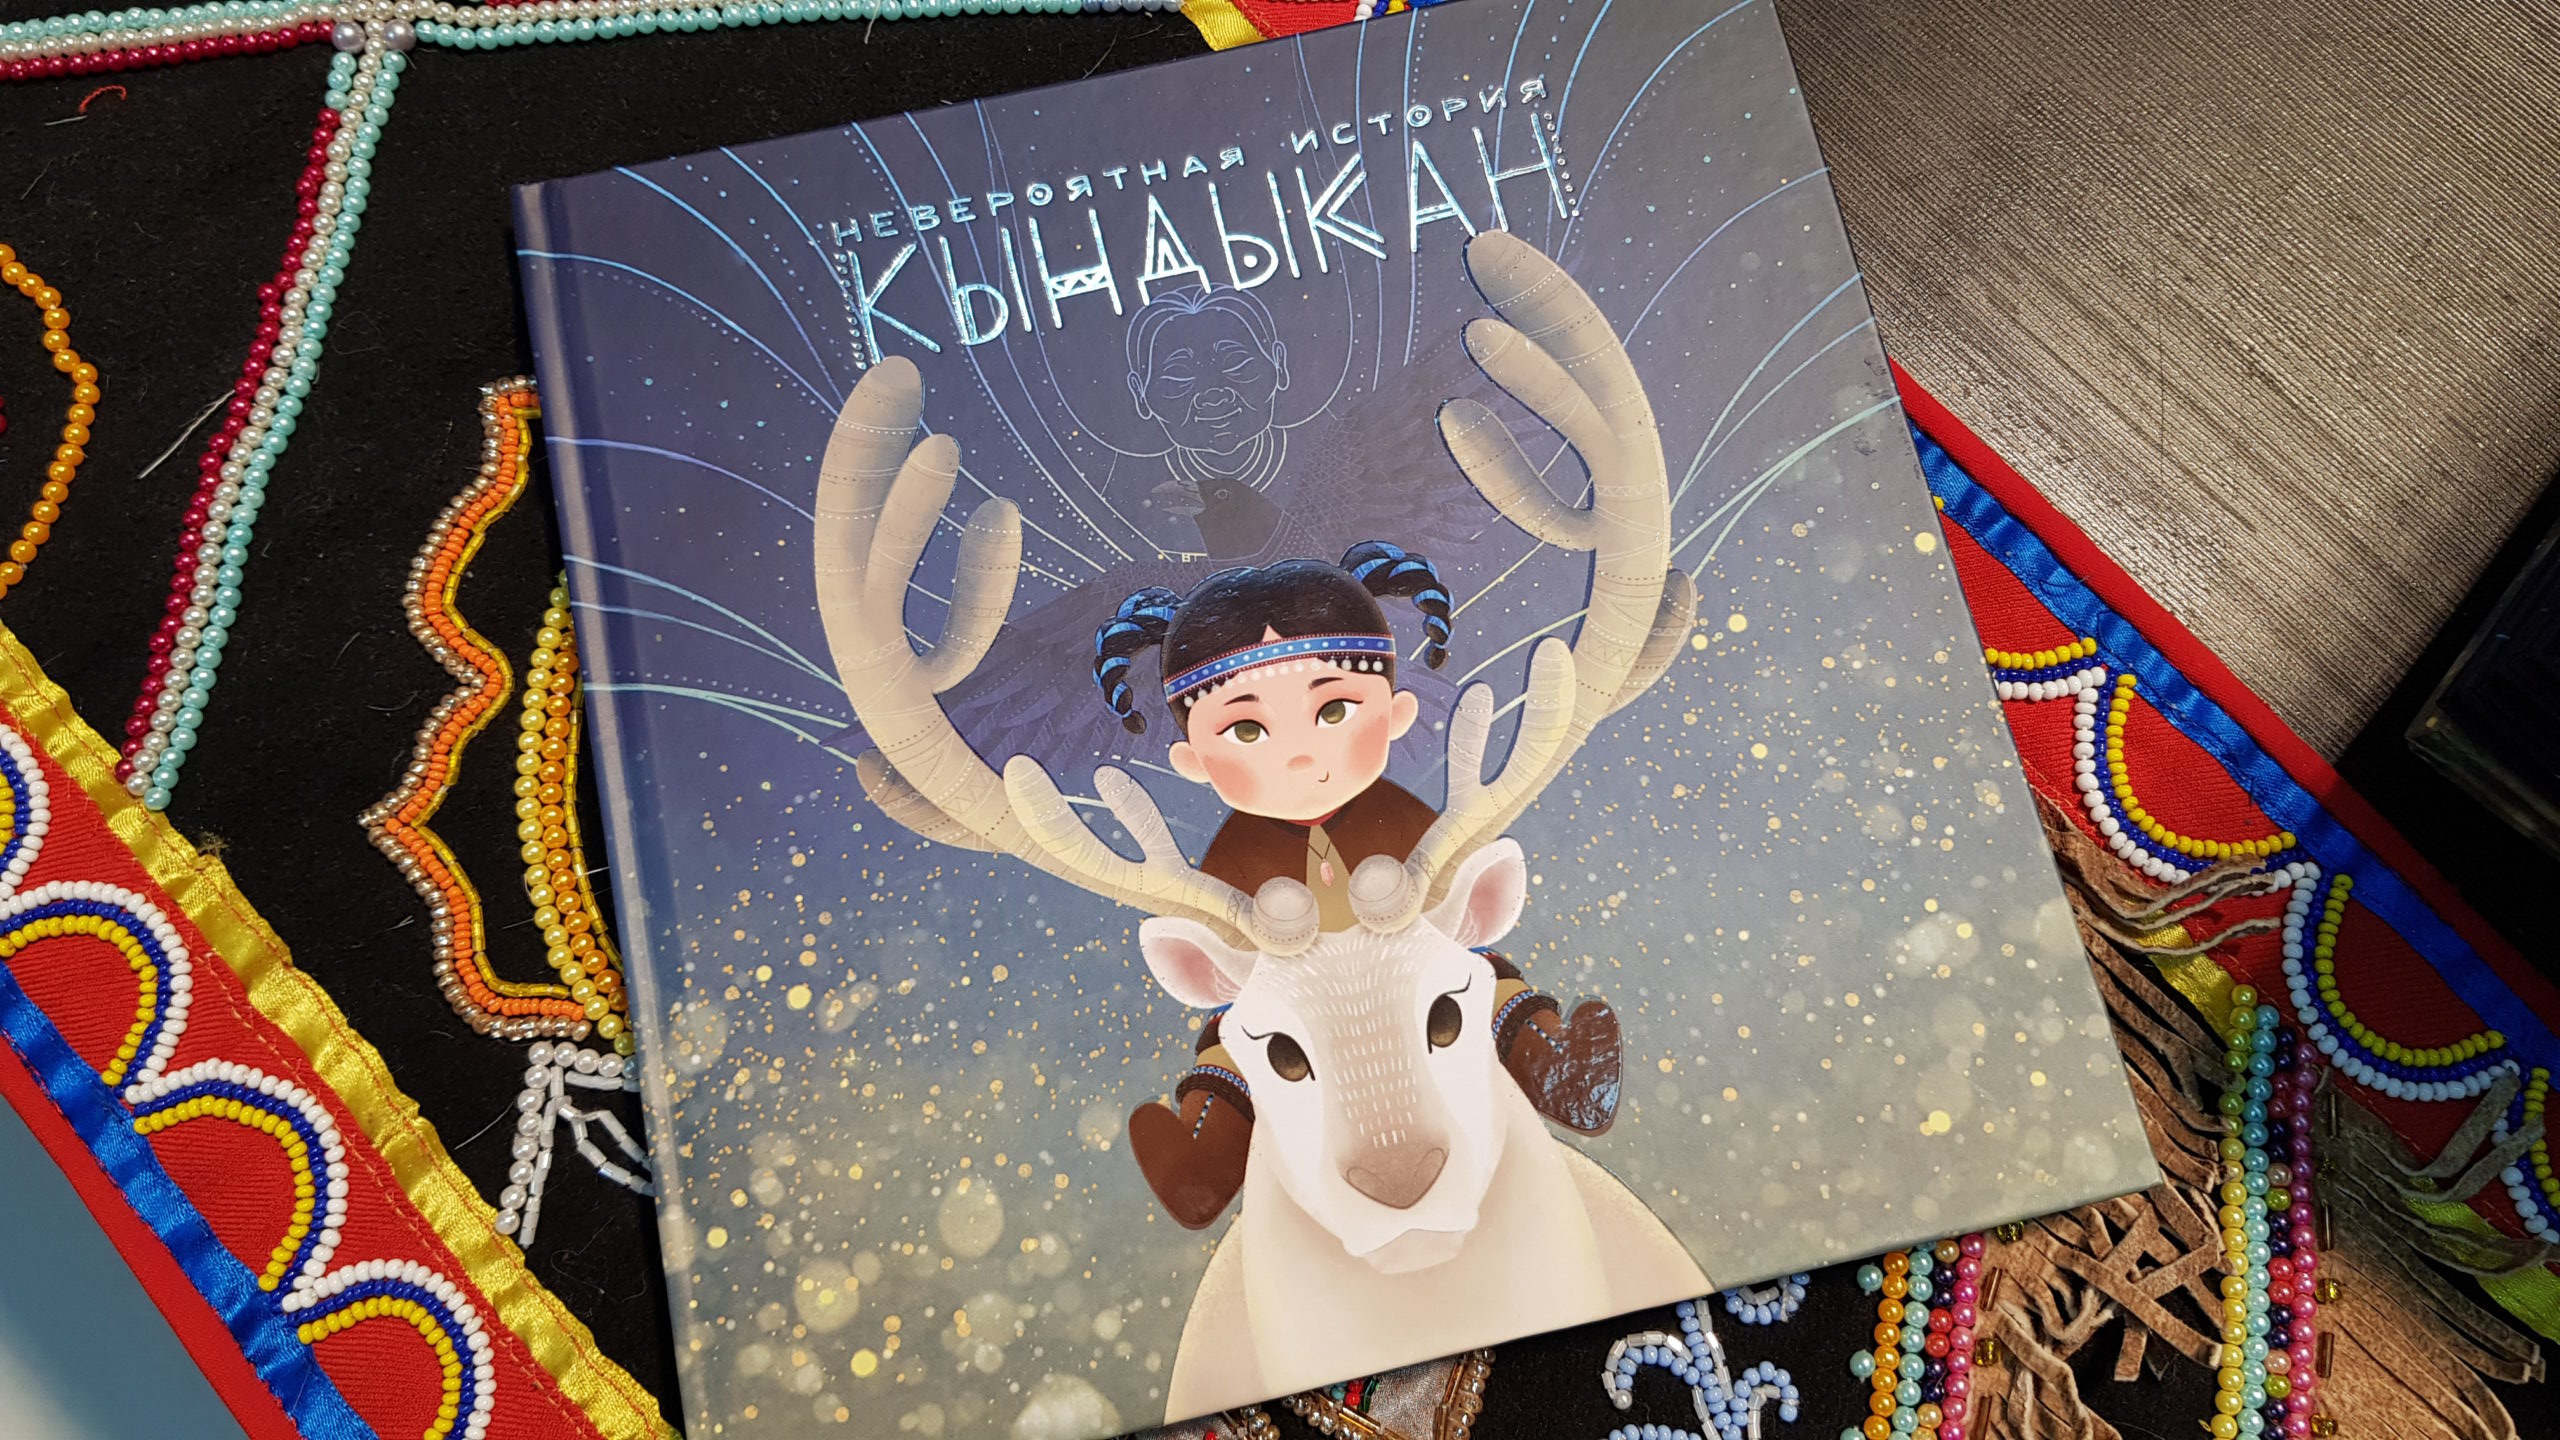 Якутская сказка «Невероятная история Кындыкан» победила в межрегиональном литературном конкурсе